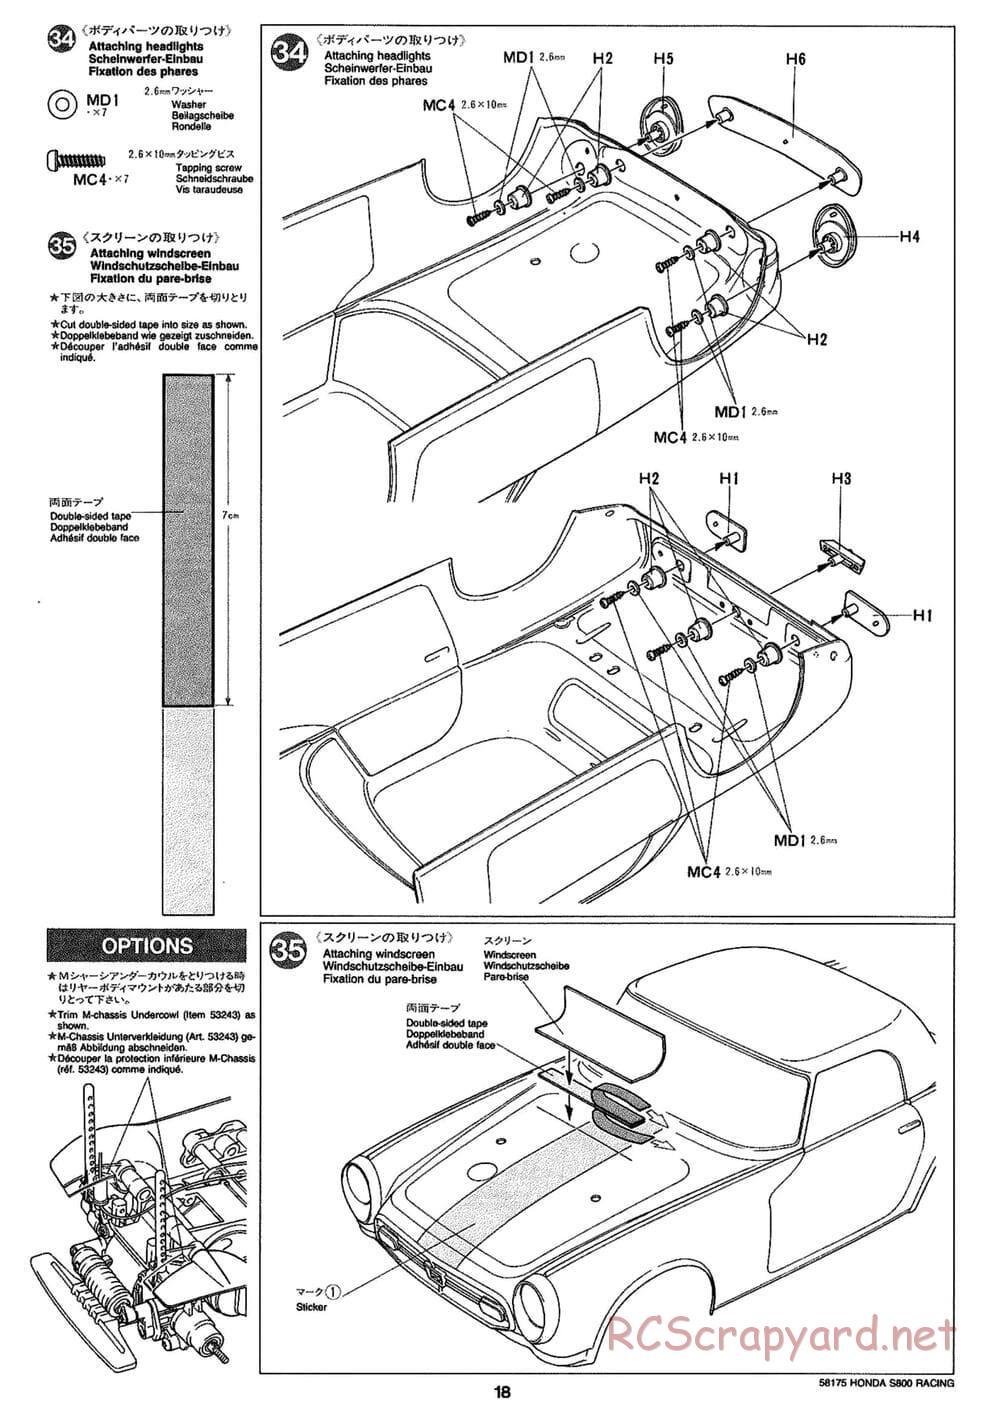 Tamiya - Honda S800 Racing - M02 Chassis - Manual - Page 18